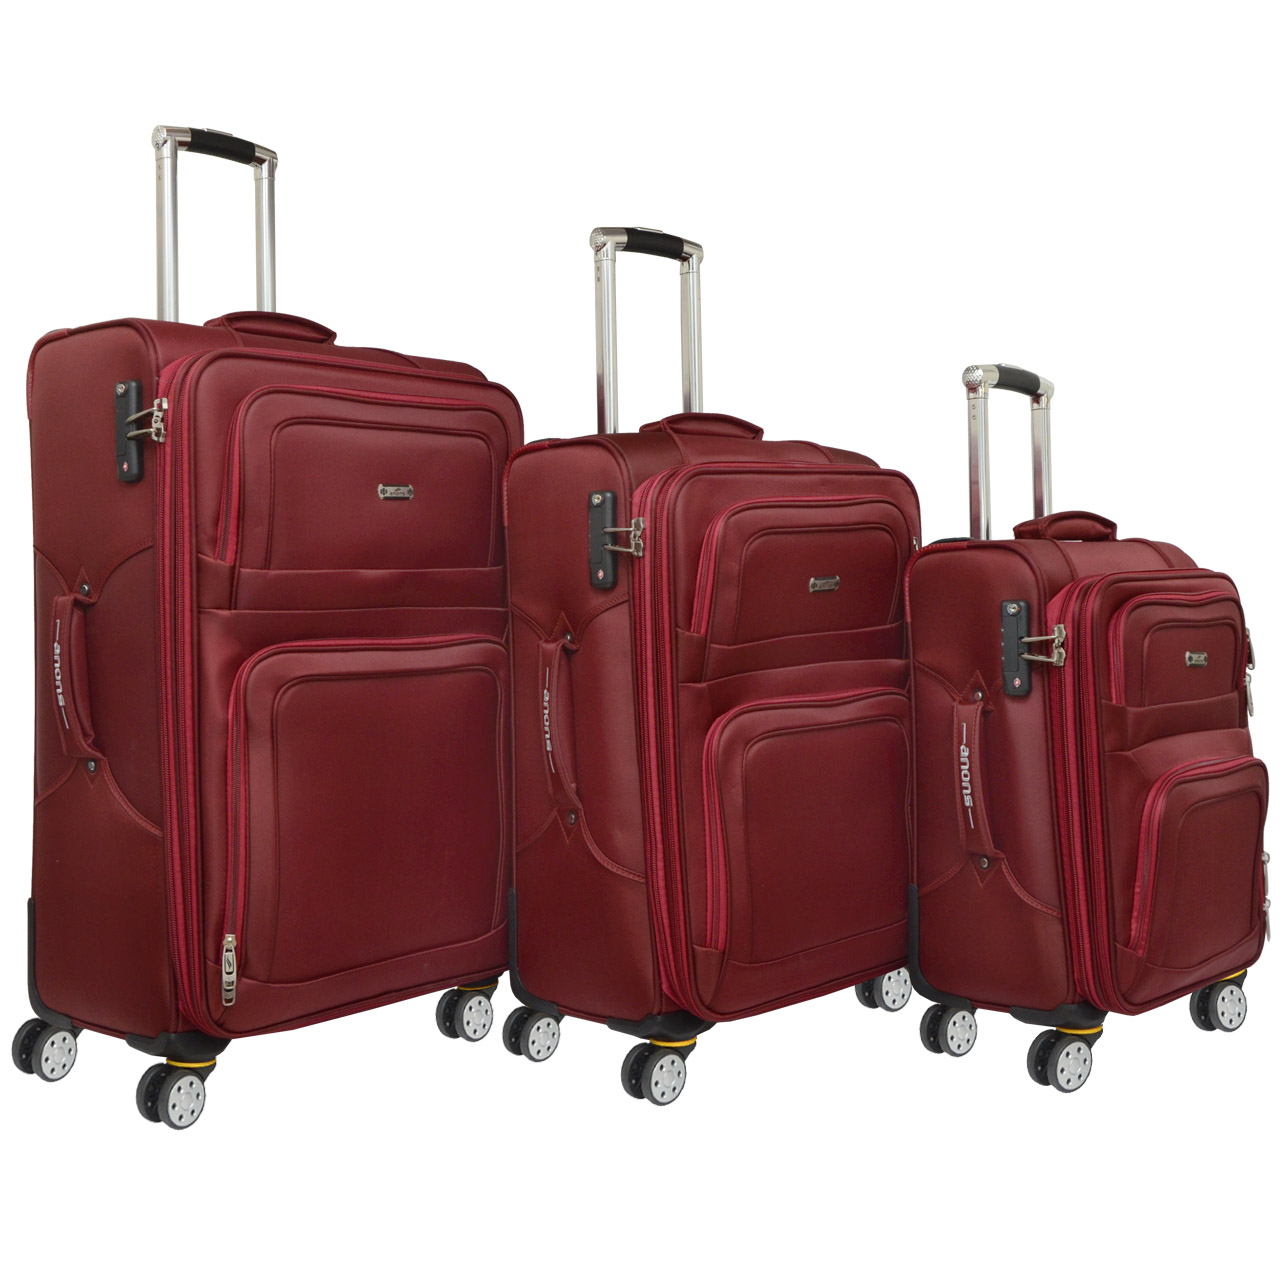 مجموعه سه عددی چمدان آنونس مدل 55 - 2014